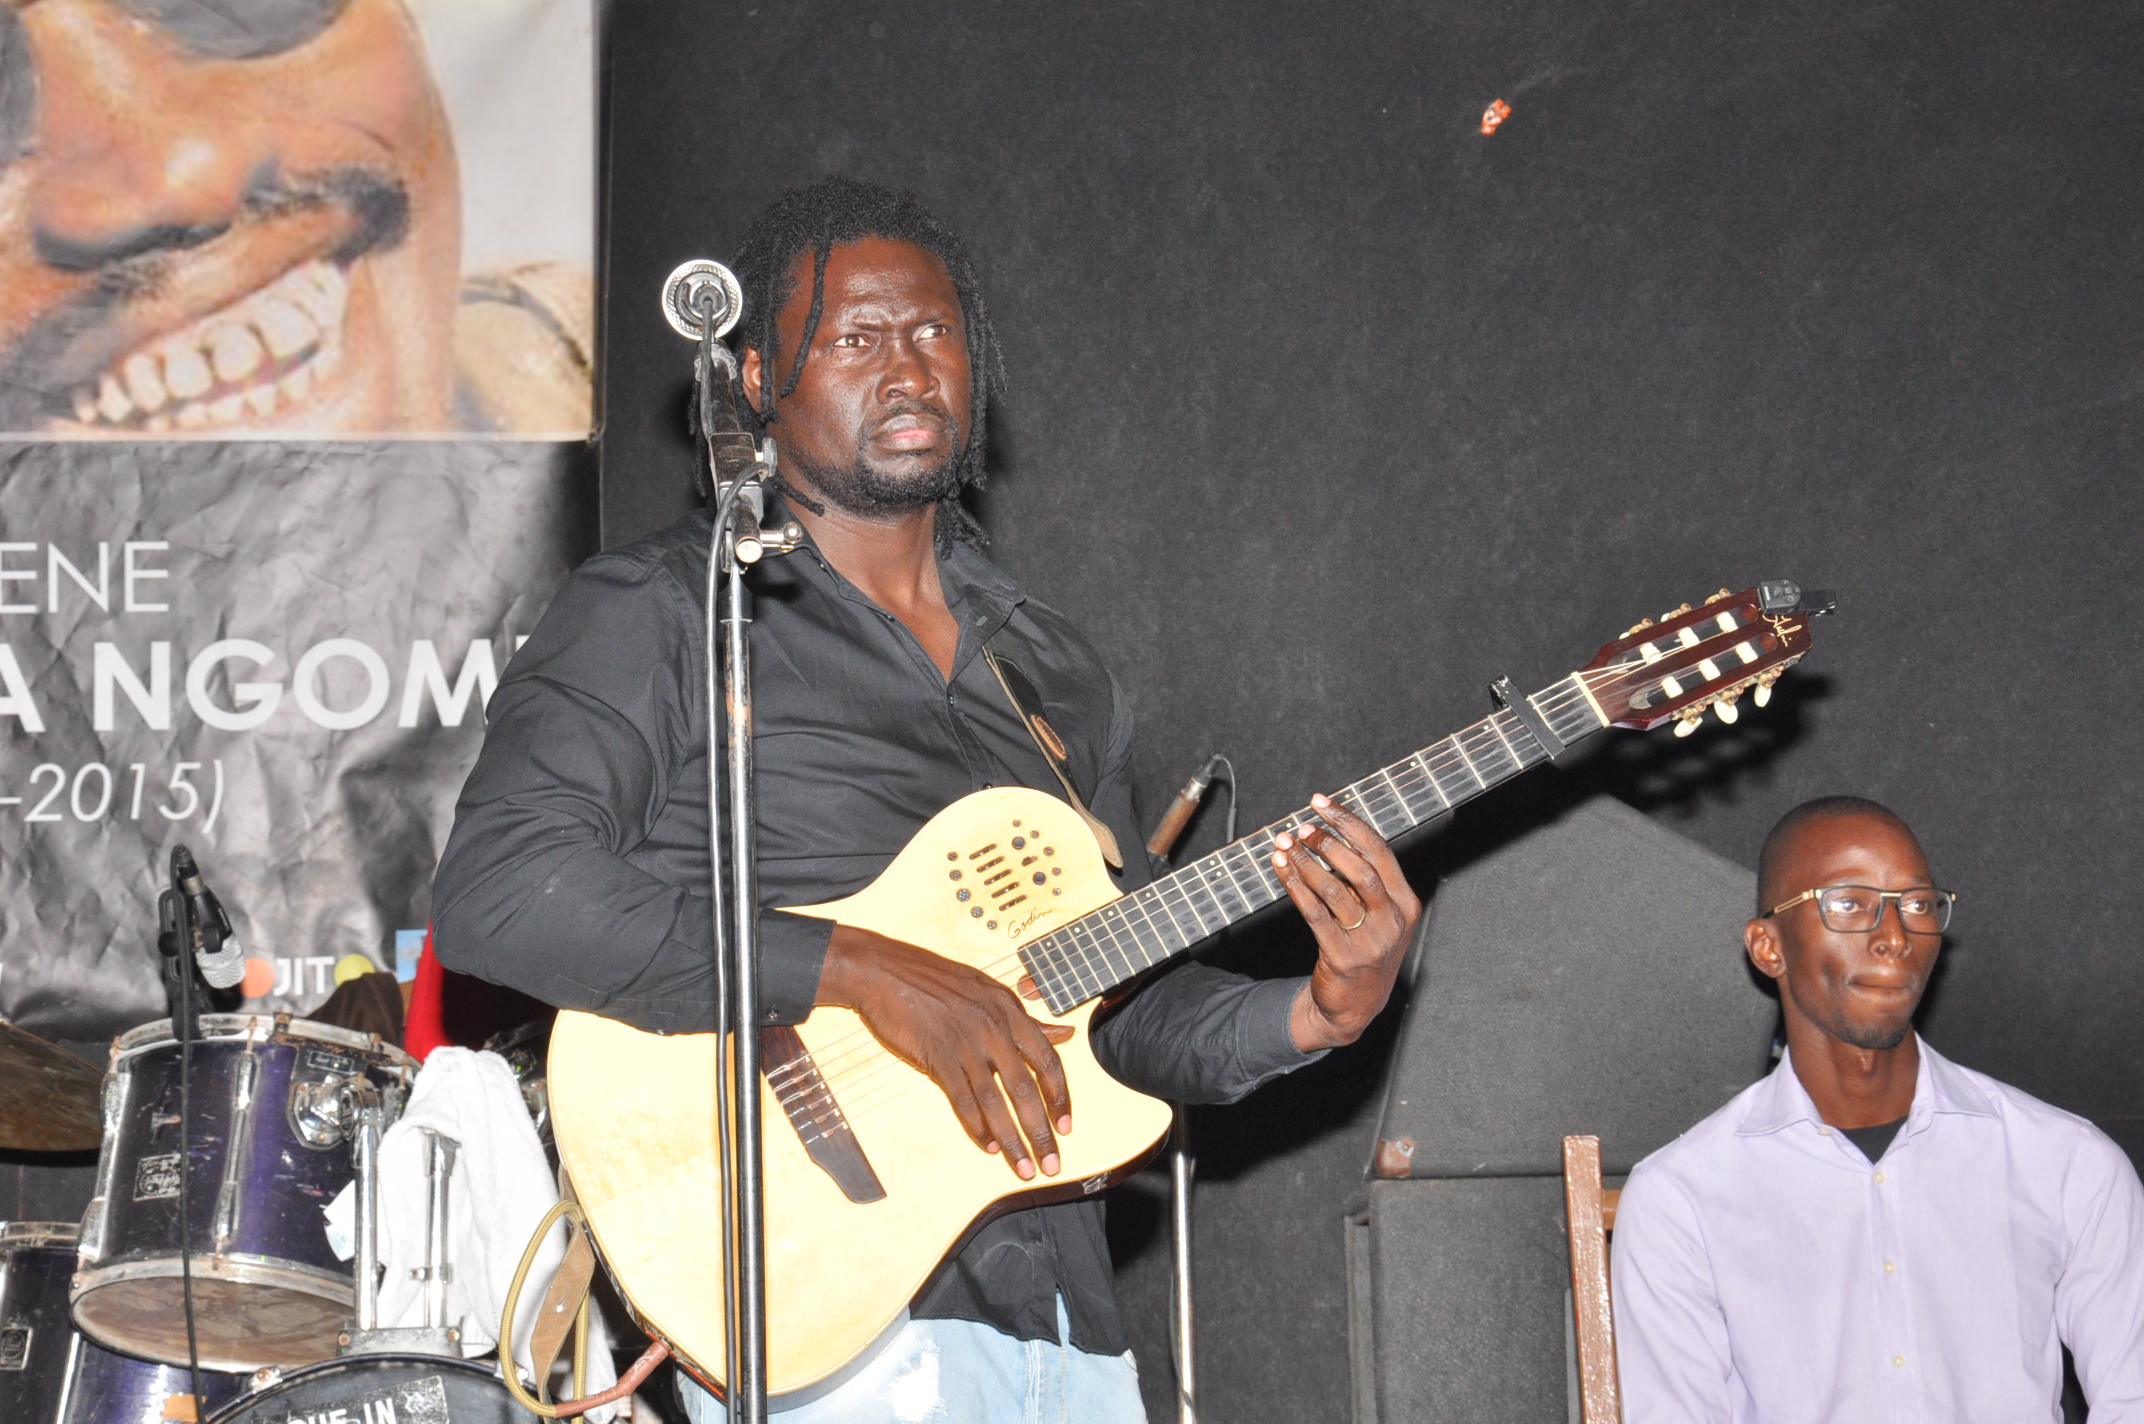 Yoro Ndiaye au just 4u c'est l'ambiance acoustique qui règne.